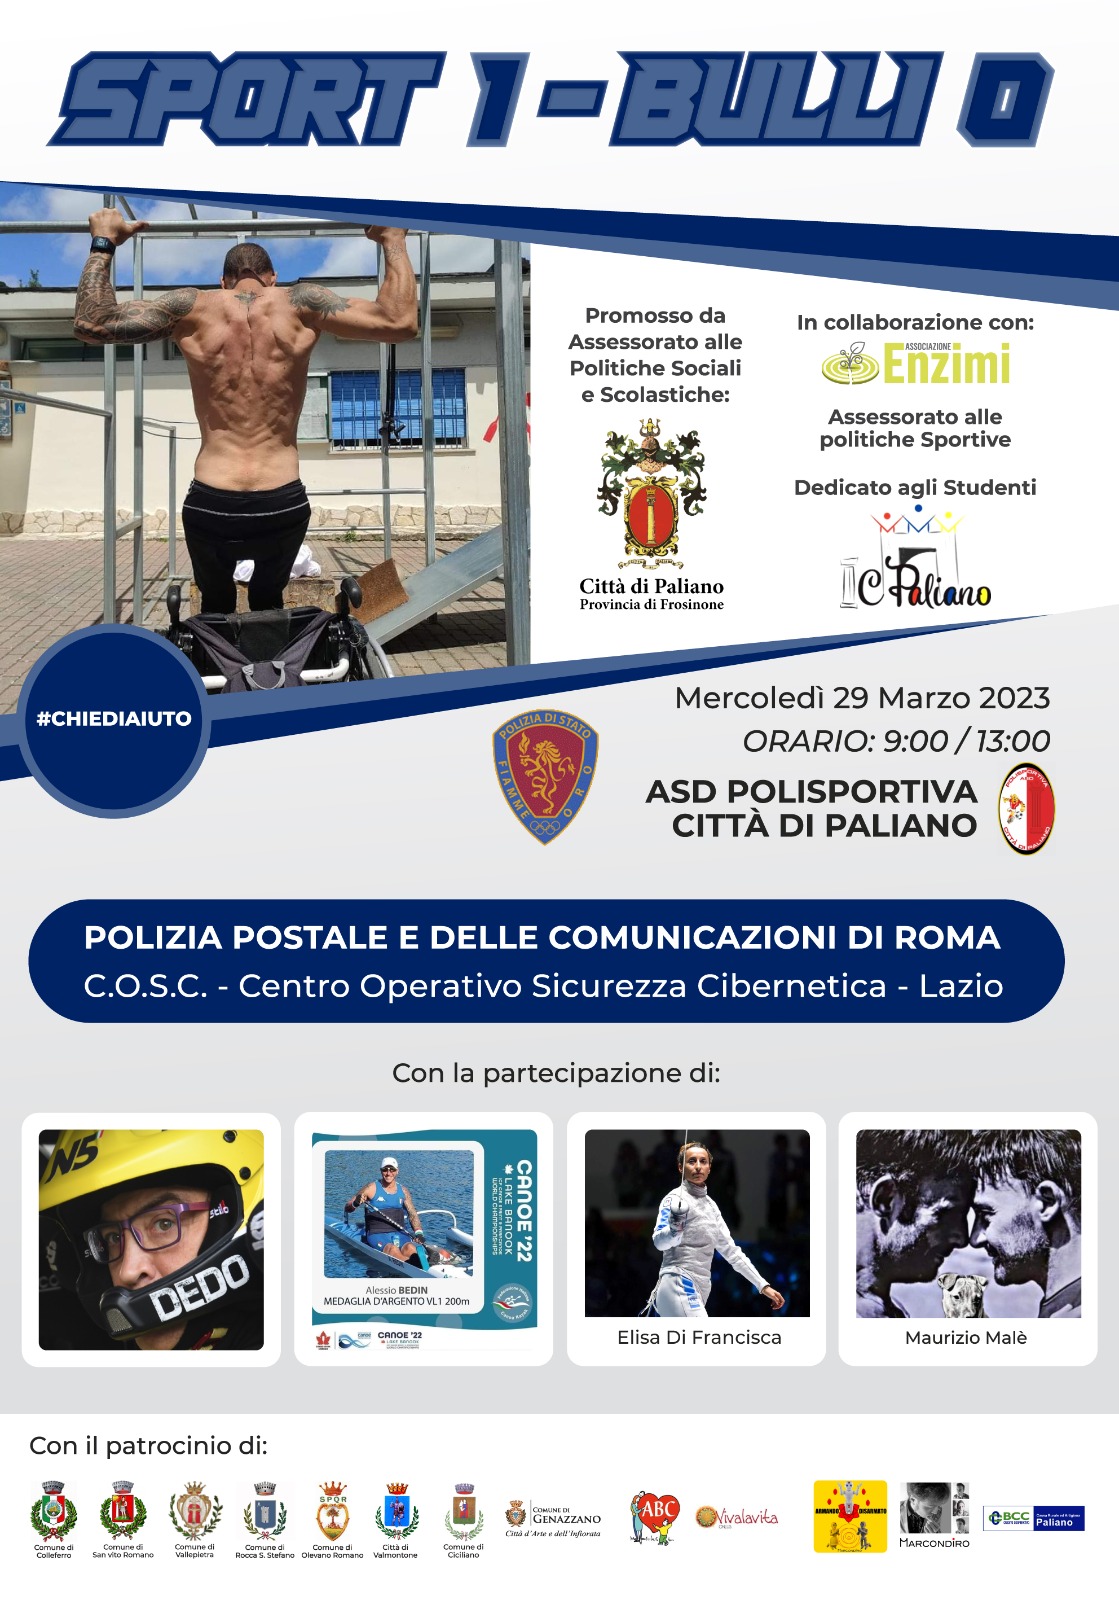 https://www.agenziaeventi.org/immagini_news/3490/paliano-sport-1-bulli-0-3490.jpg